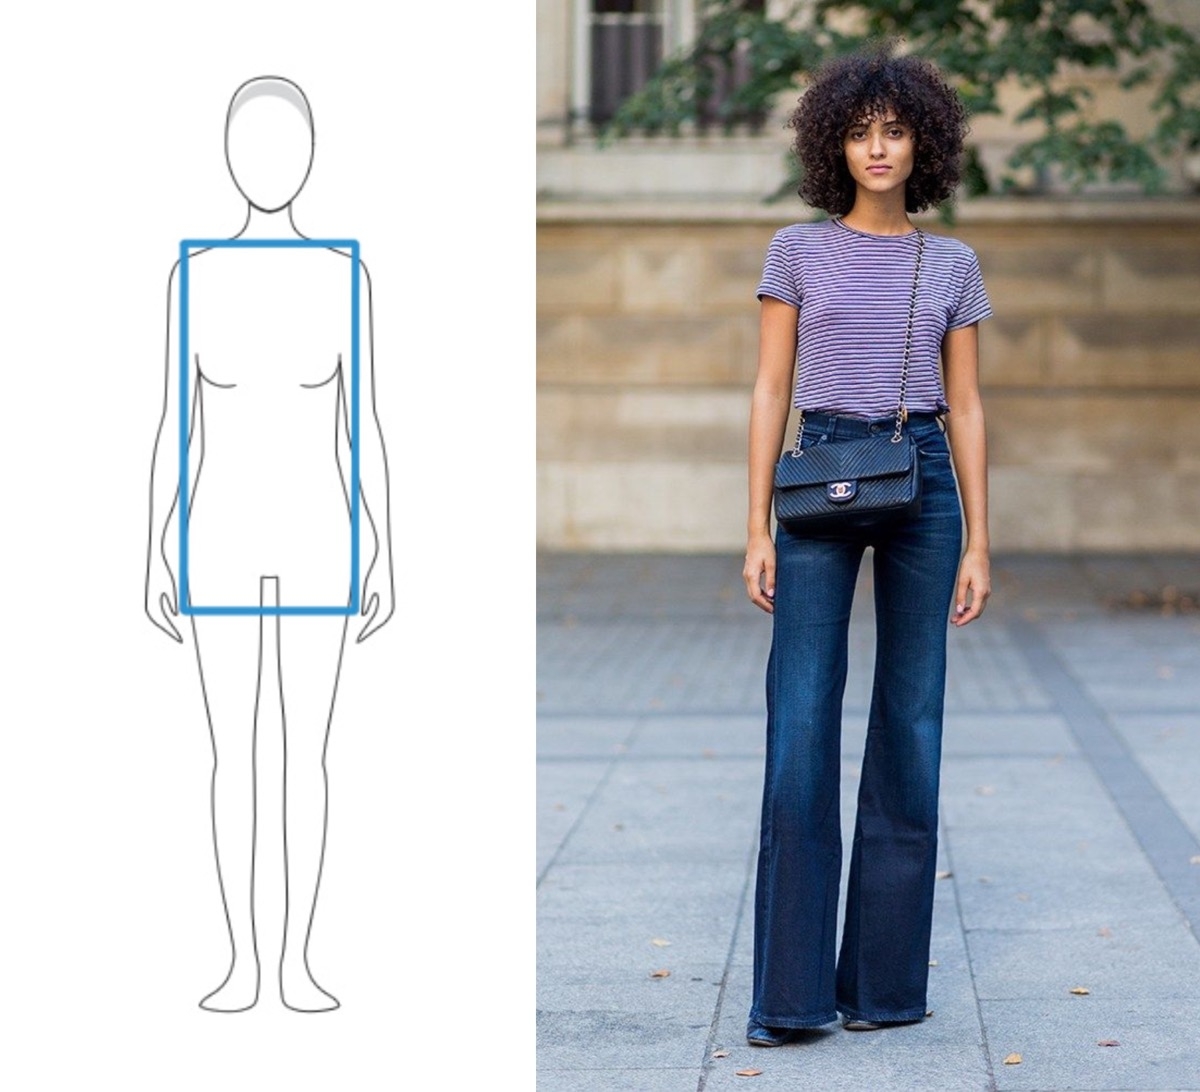 Fashion-инструкция: как выбрать идеальные джинсы - фото №1